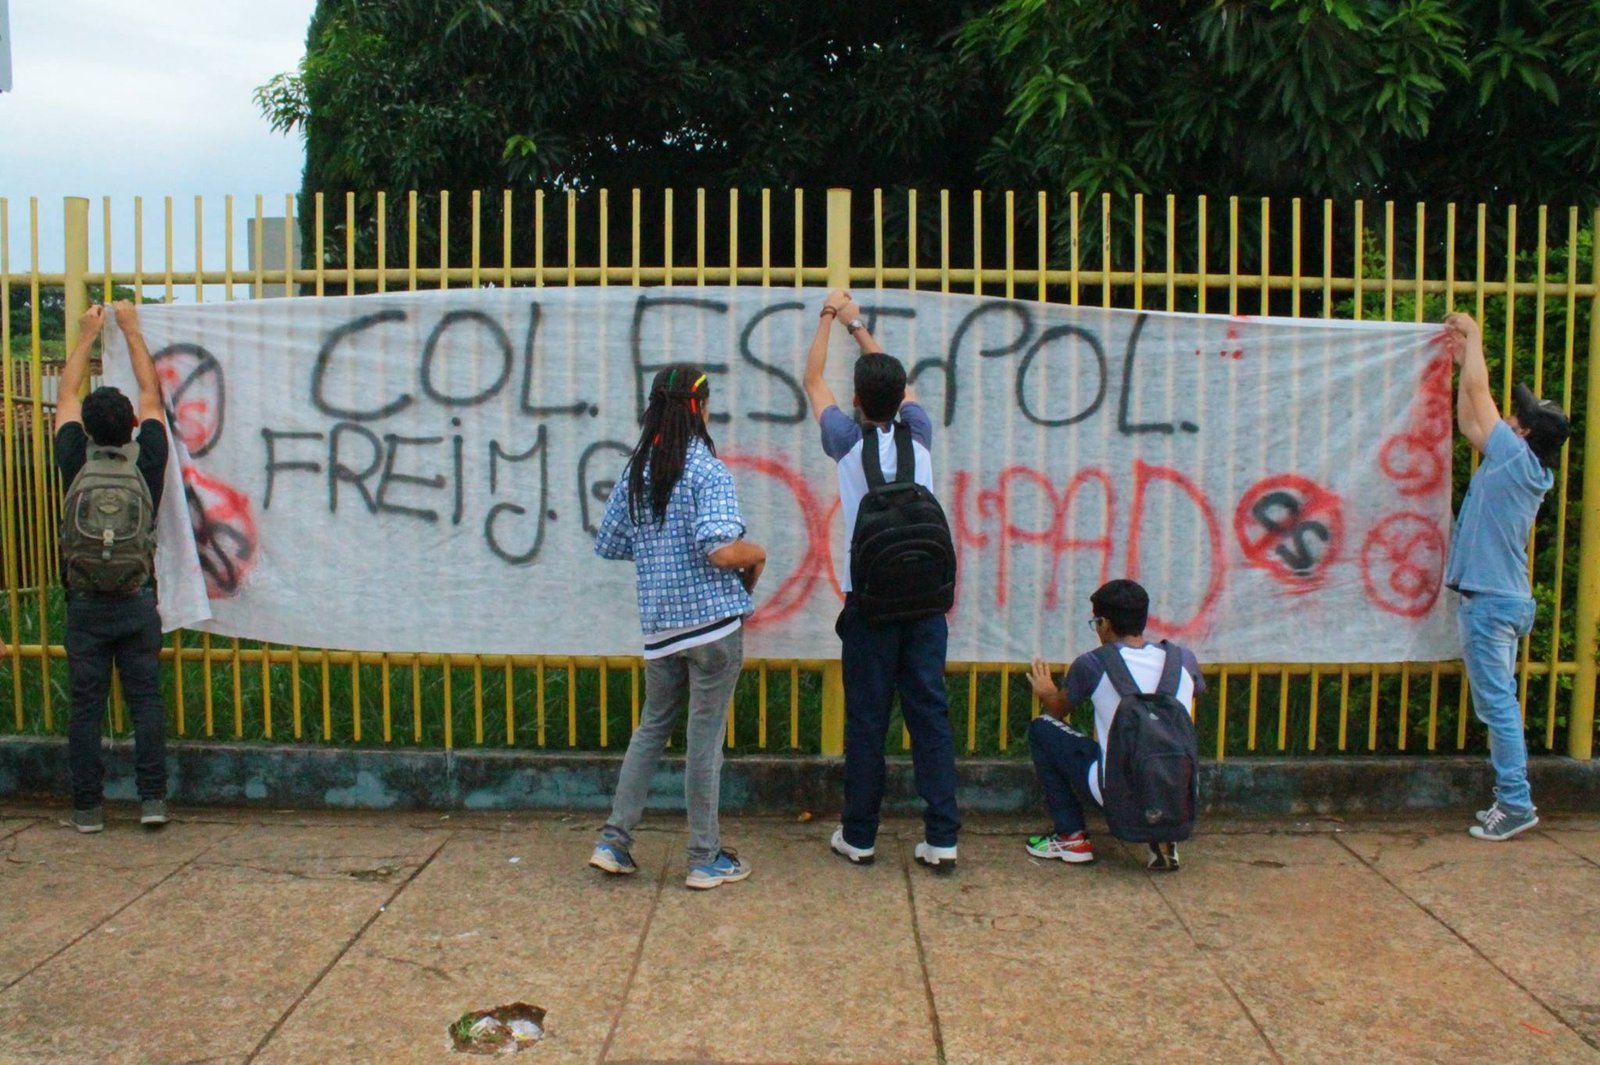 Seguem as ocupações em Goiás- Agora são 8 escolas em 7 dias